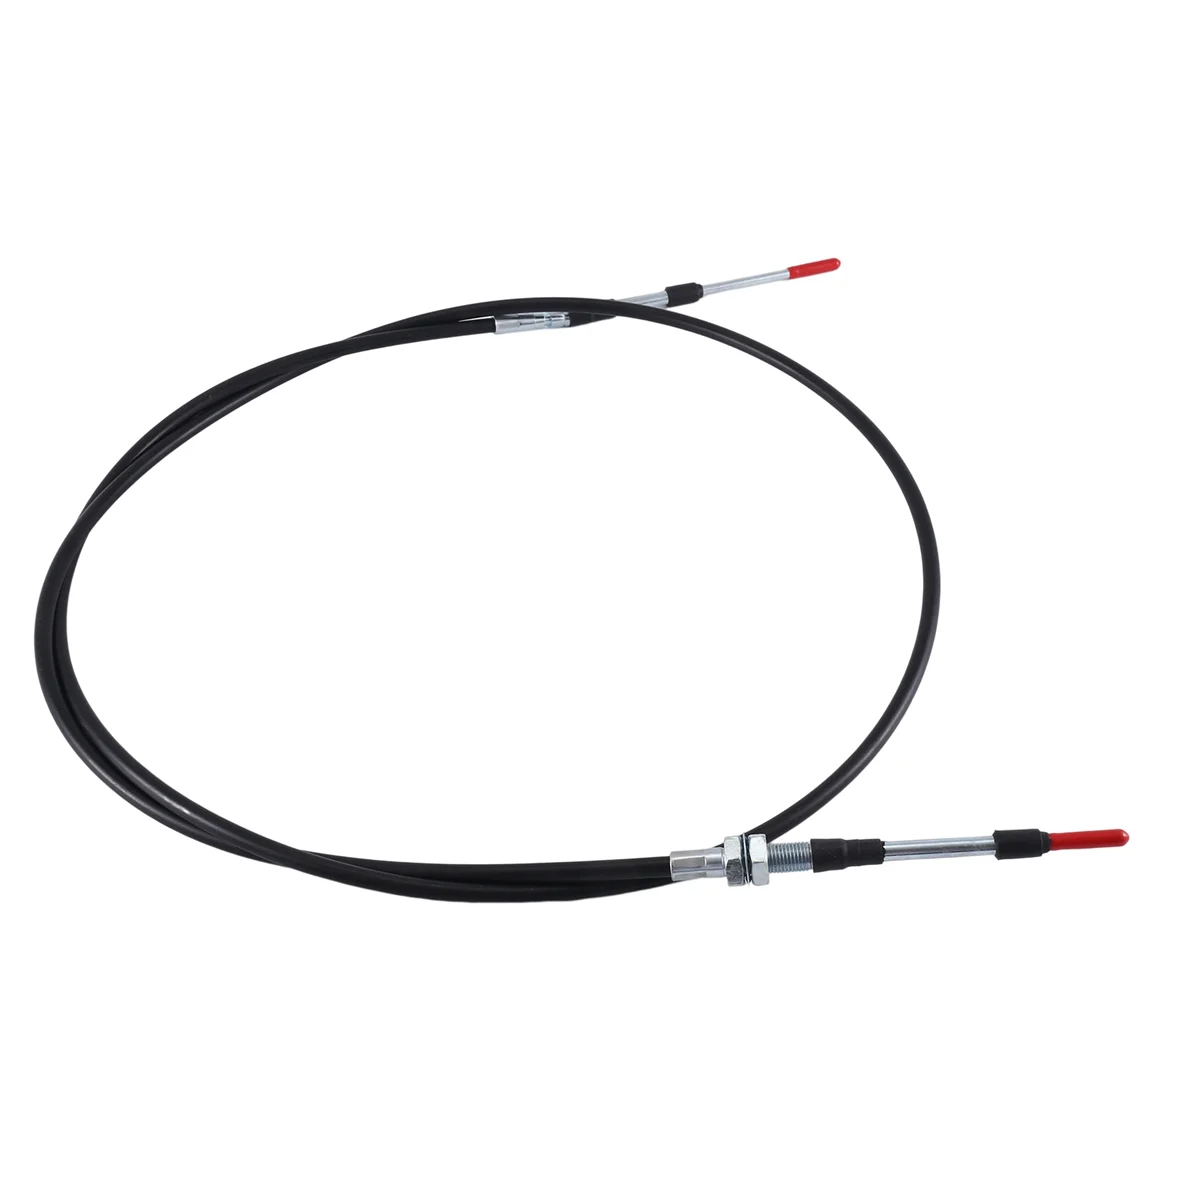 6675668 Cable del Acelerador para Bobcat S100,S220,S250,S300,S330,MT50,341 del Acelerador Cable del Acelerador . ' - ' . 4